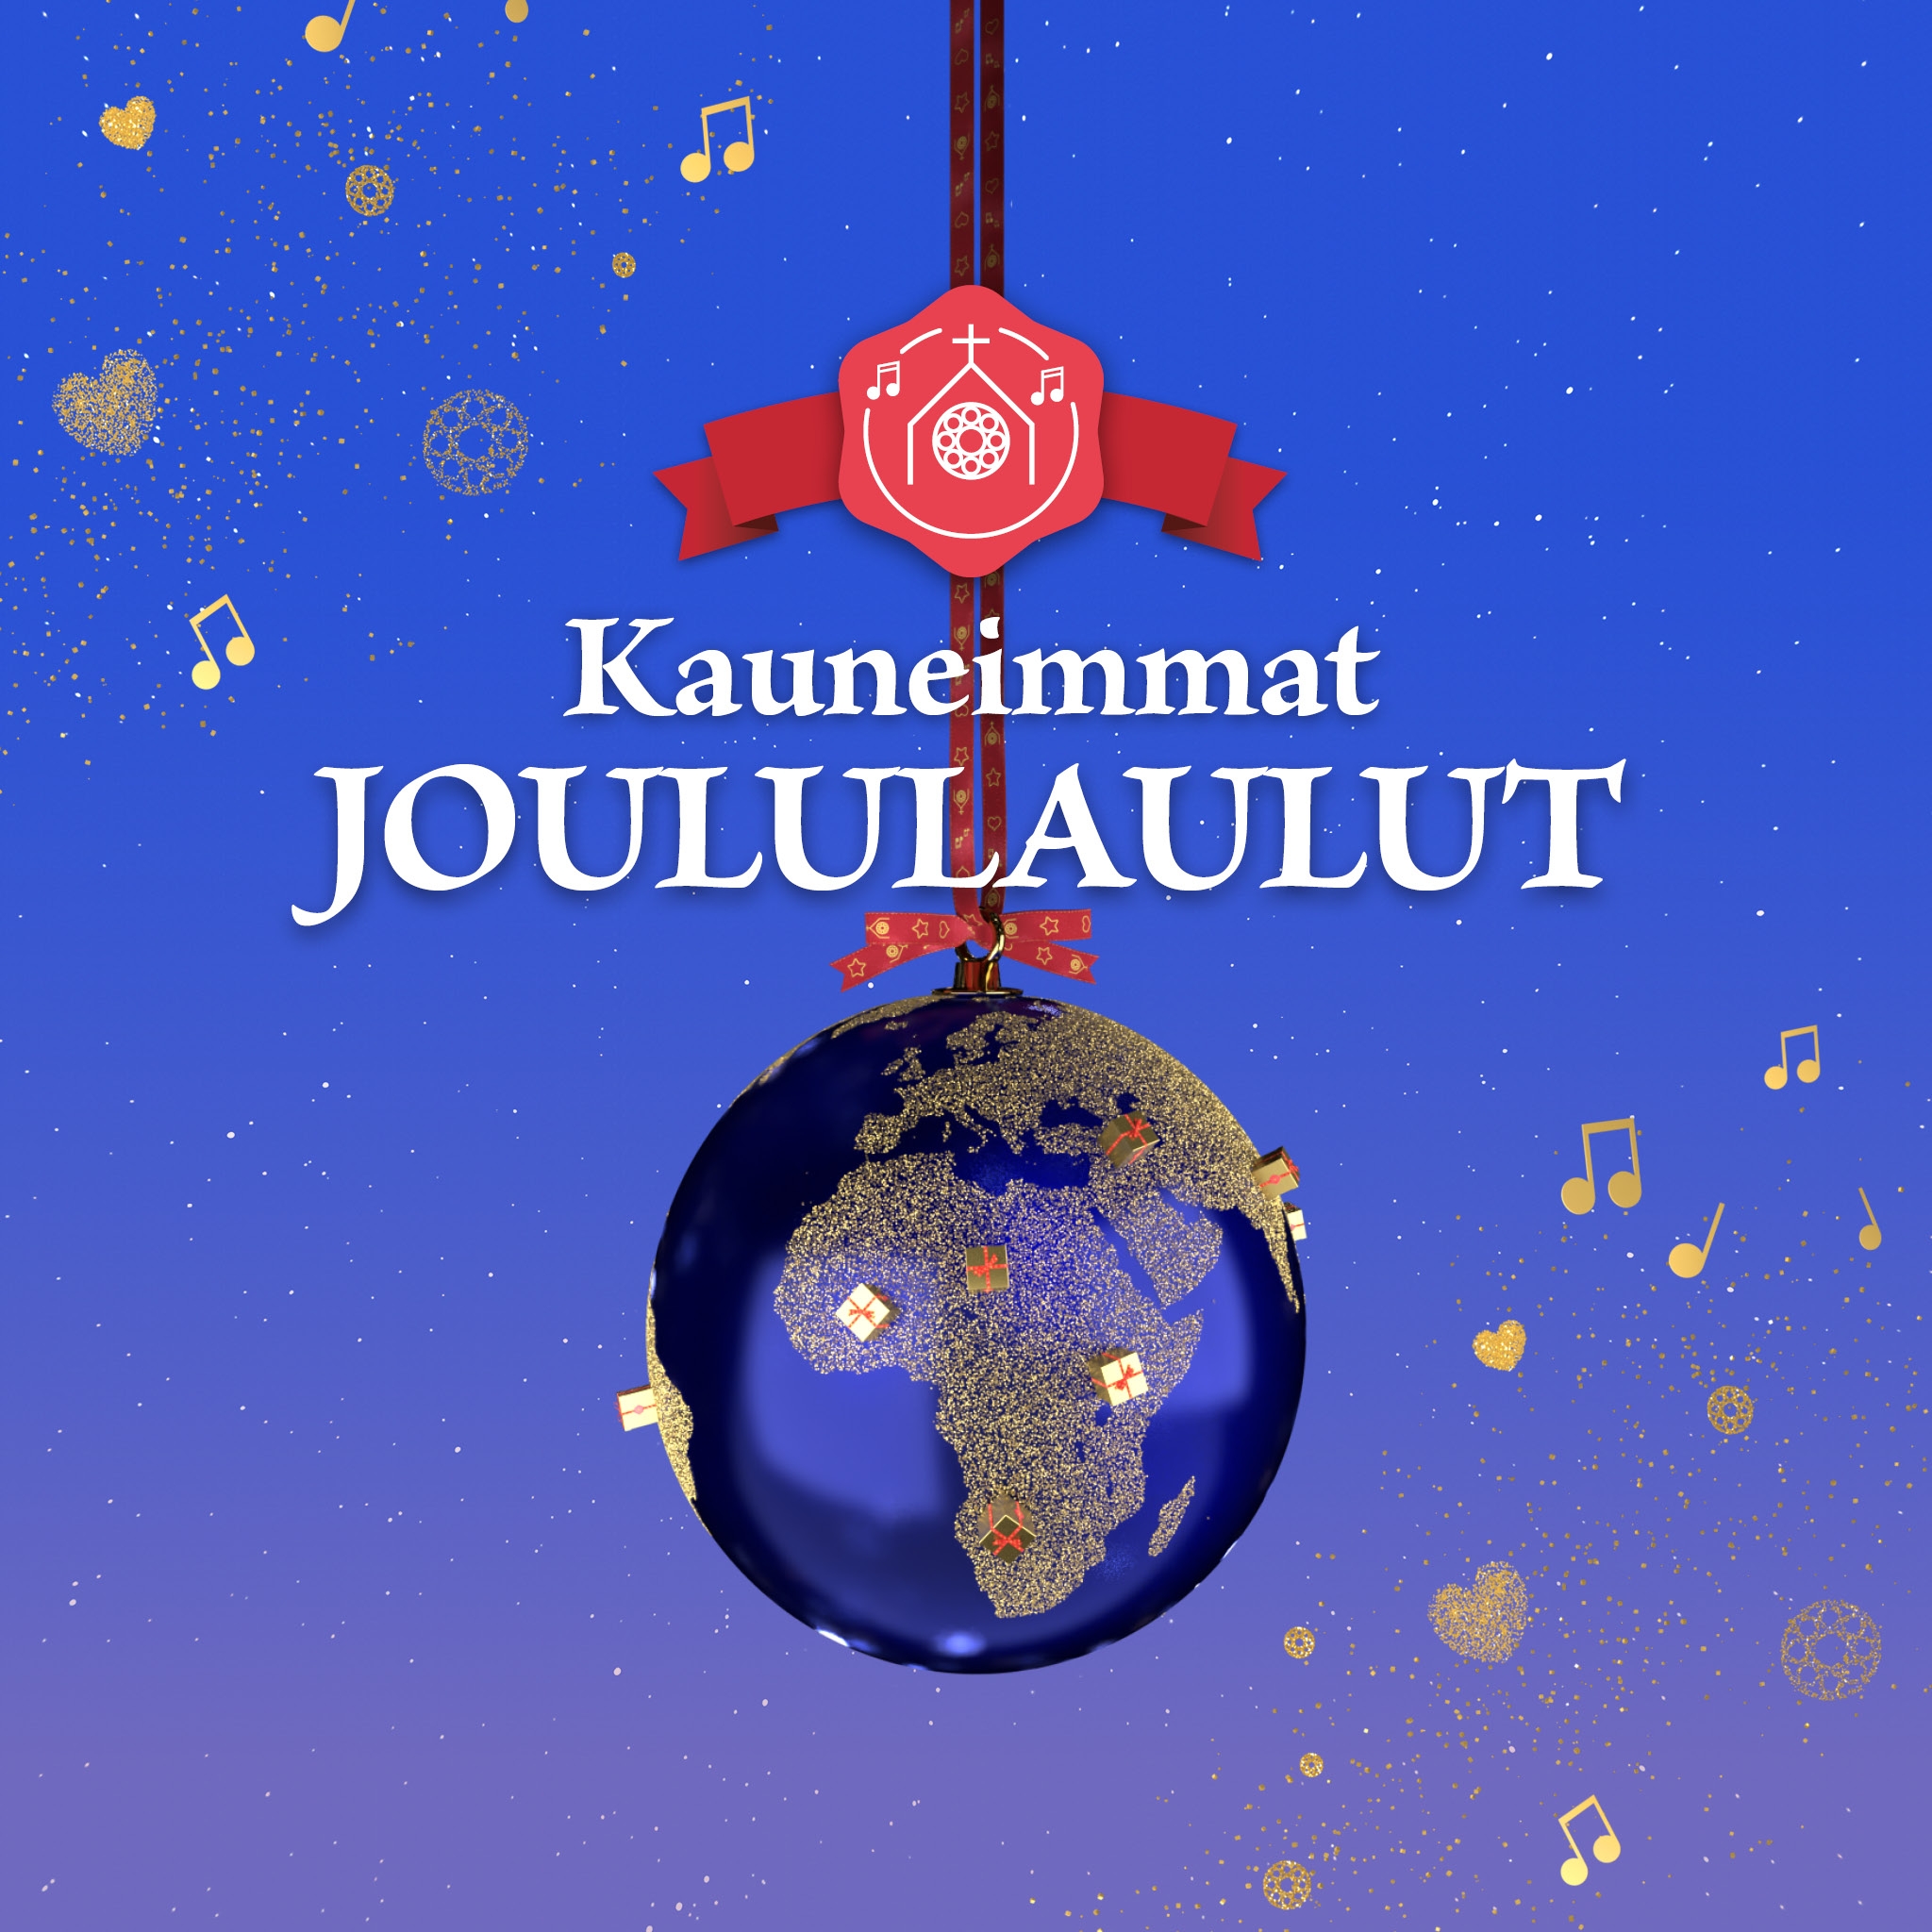 Kauneimmat Joululaulut -logo ja maapallo joulukuusenkoriste tähtitaivaalla